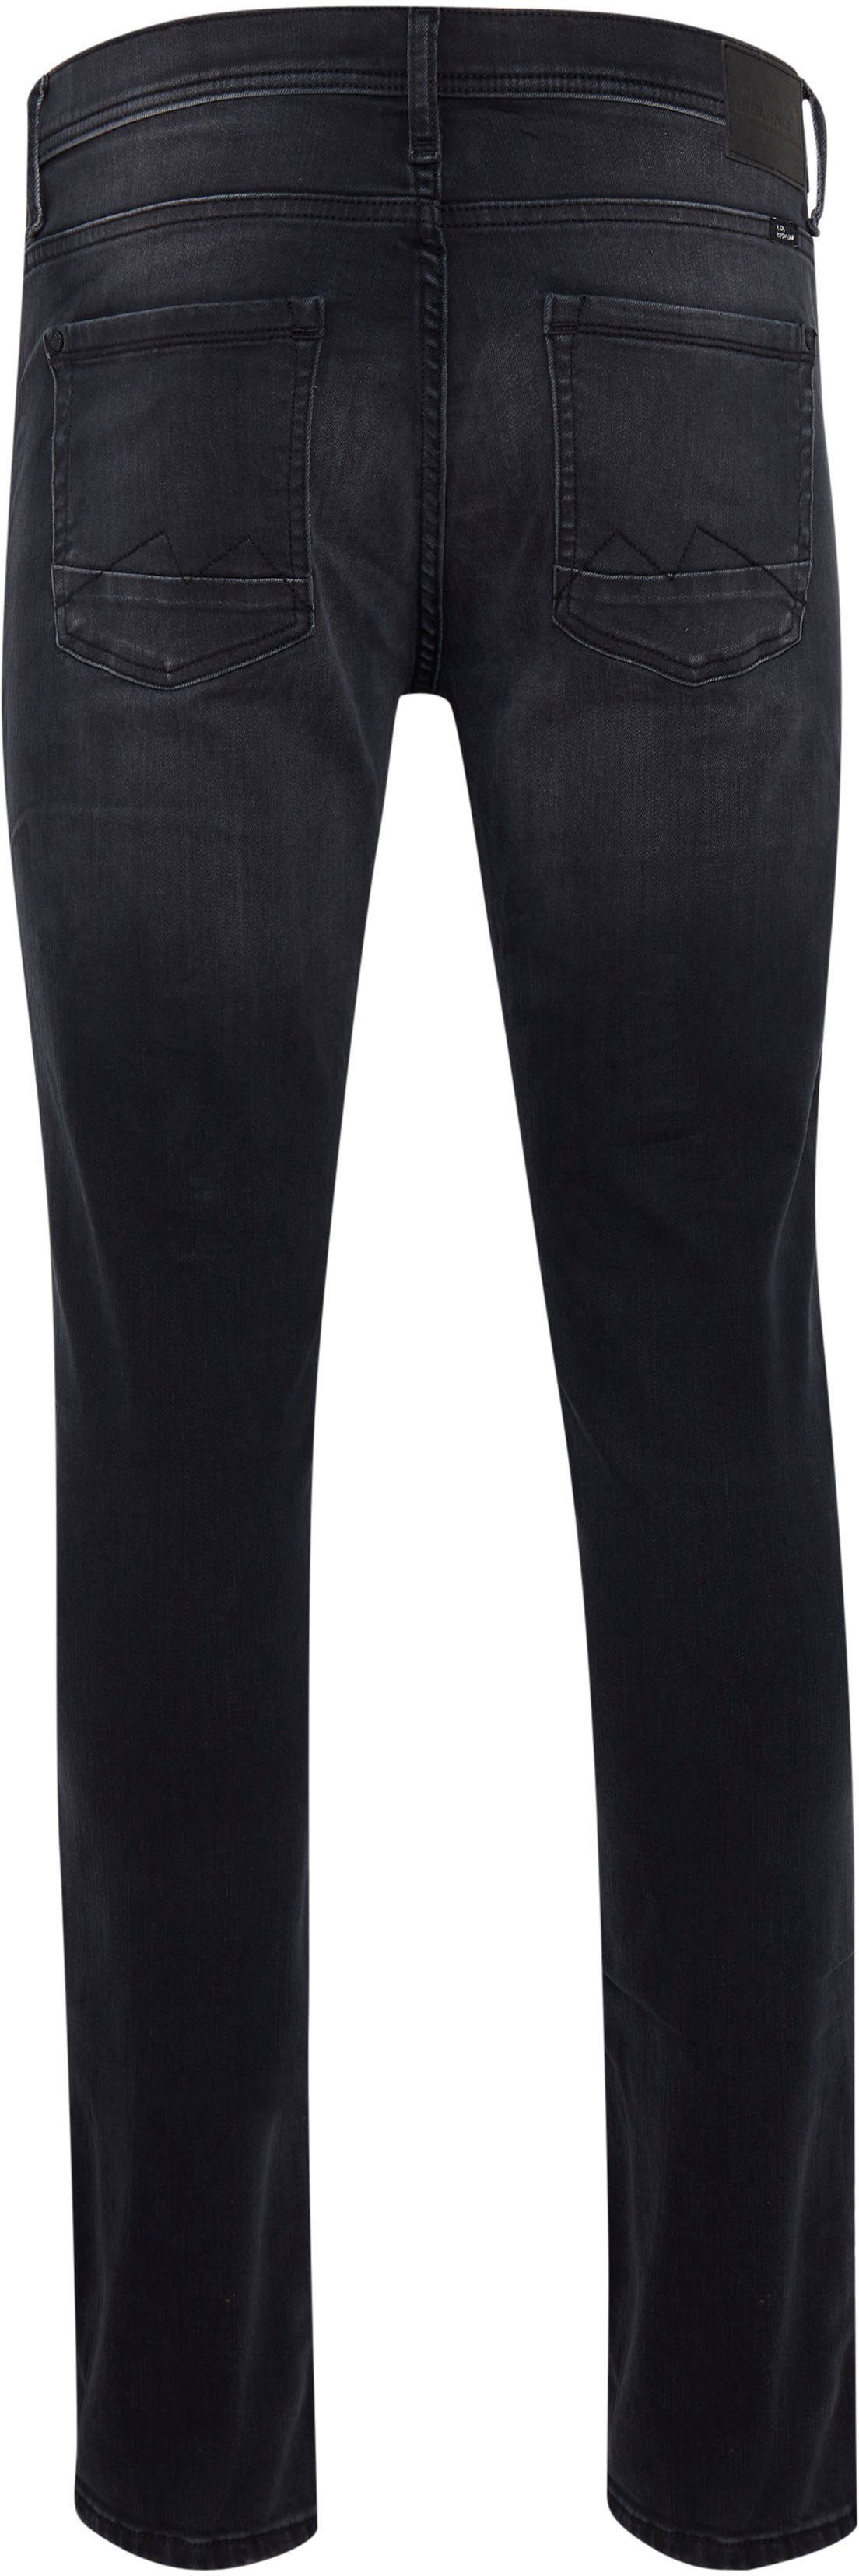 Blend Slim-fit-Jeans Multiflex Jet washed black